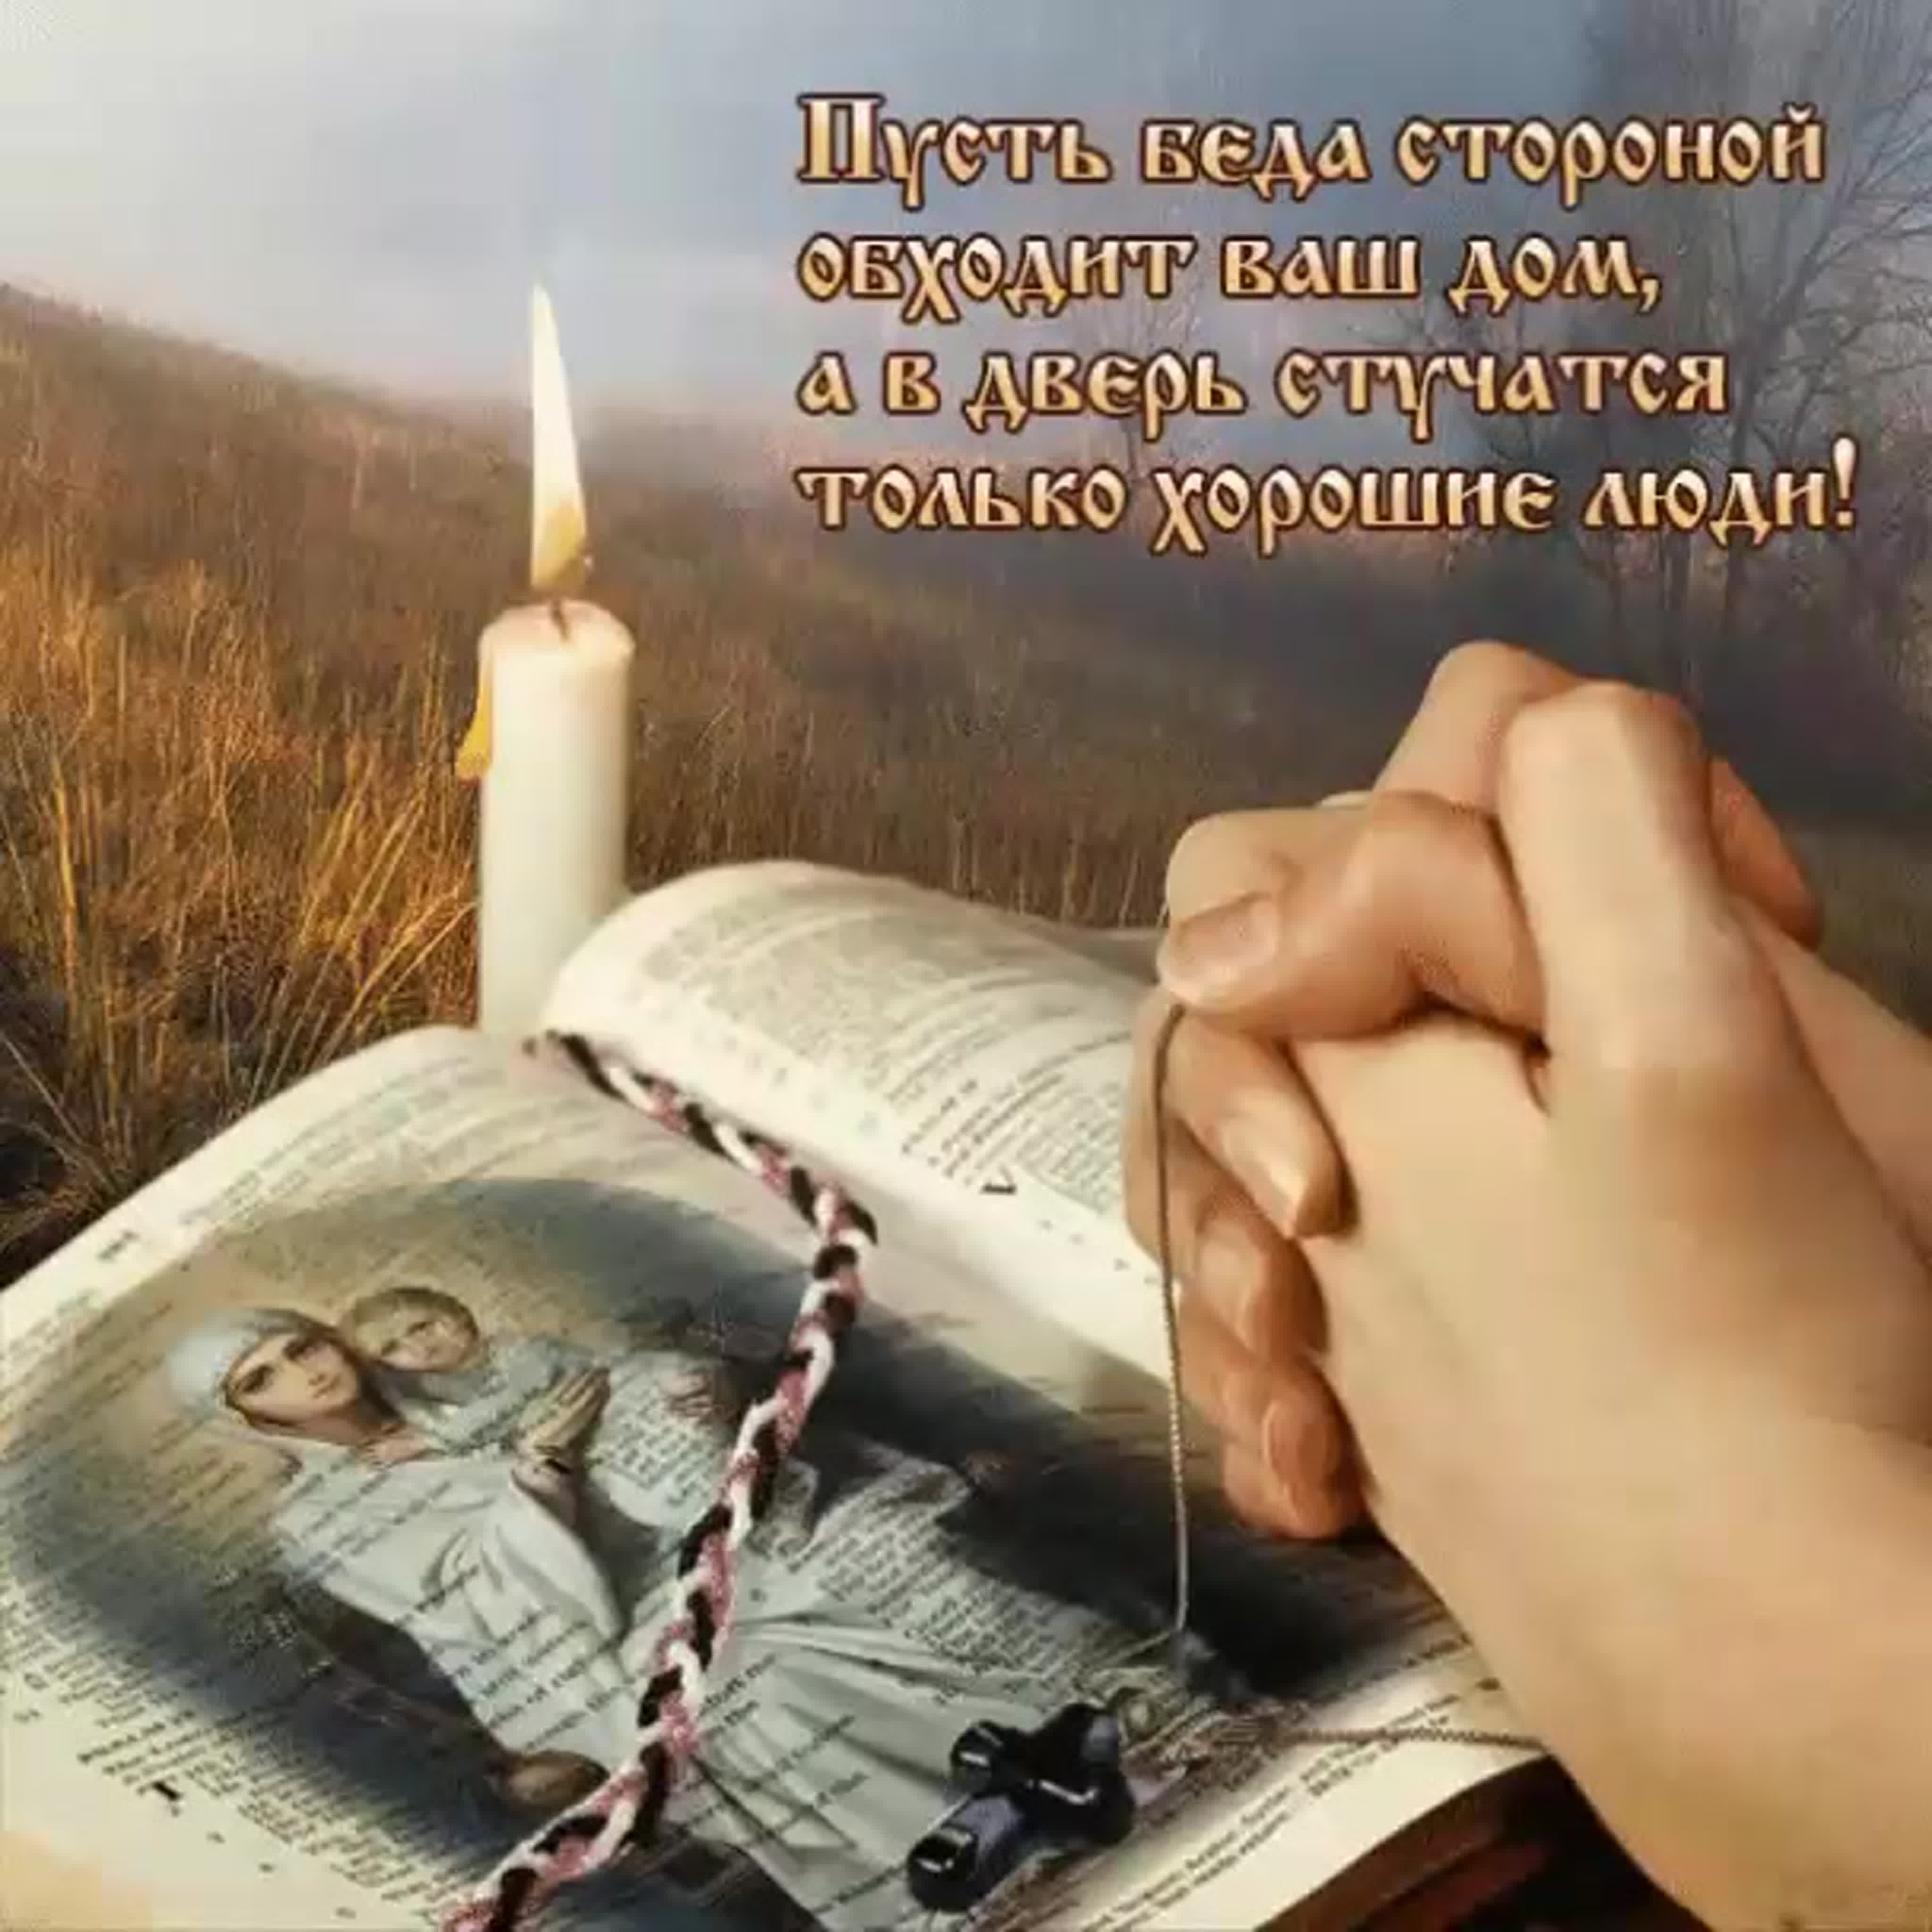 доброе утро правосл православные с пожеланиями картинки